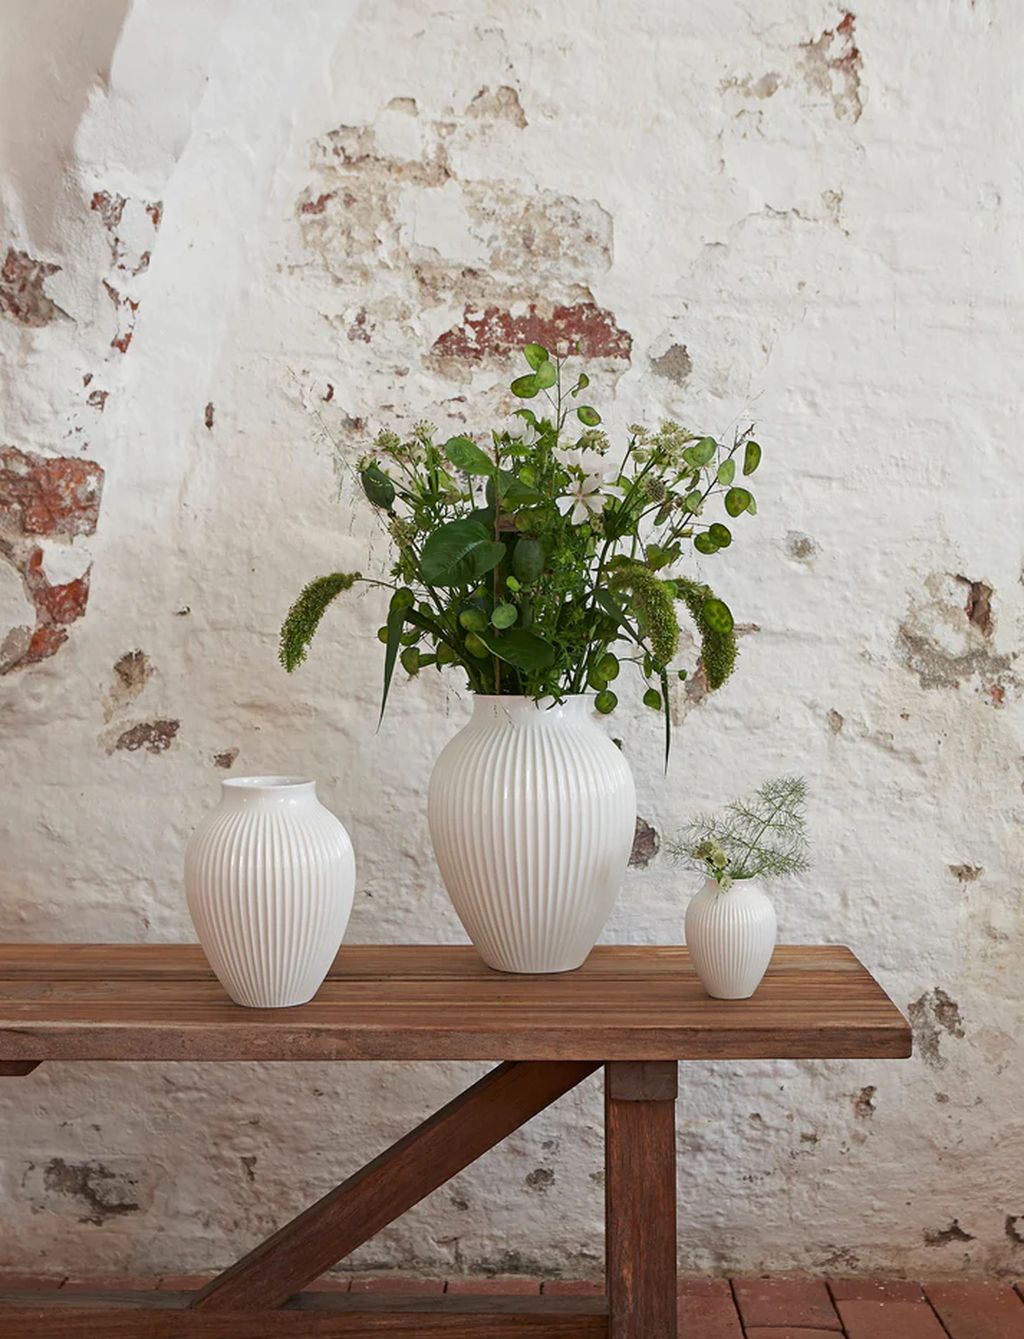 Knabstrup Keramik Vas med spår h 27 cm, vit